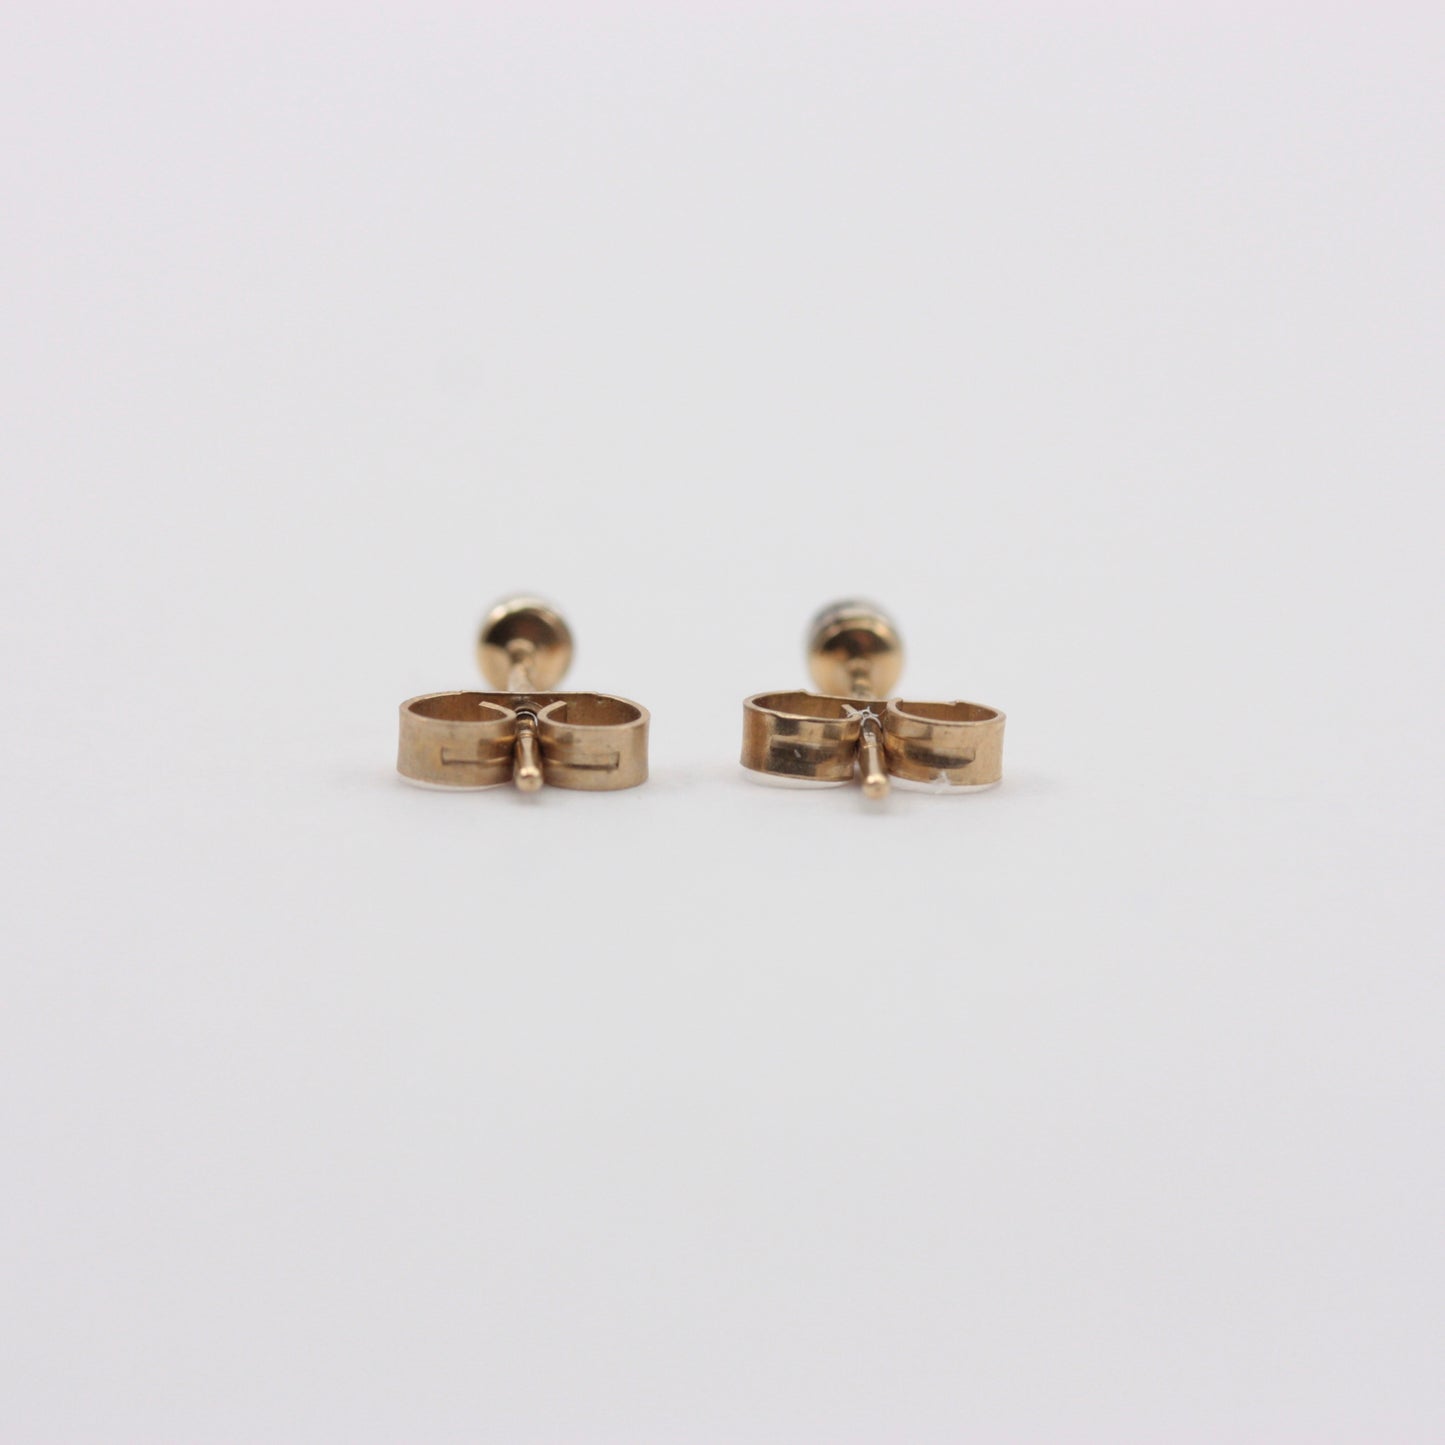 Vintage Tiny 9ct Gold Diamond Stud Earrings, 1981, 2.5mm